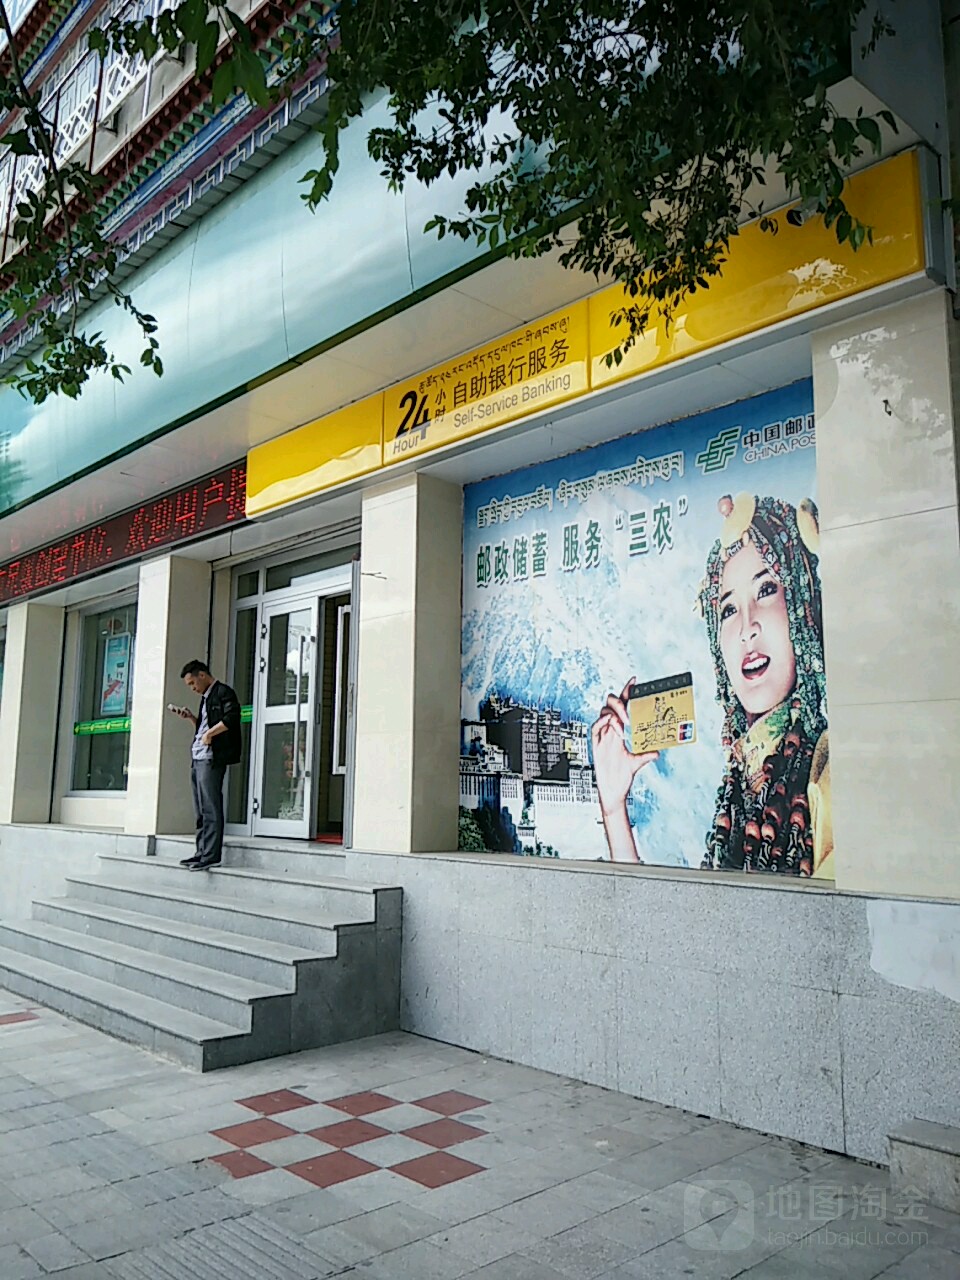 中國郵政儲蓄銀行24小時自助銀行服務(江蘇路店)